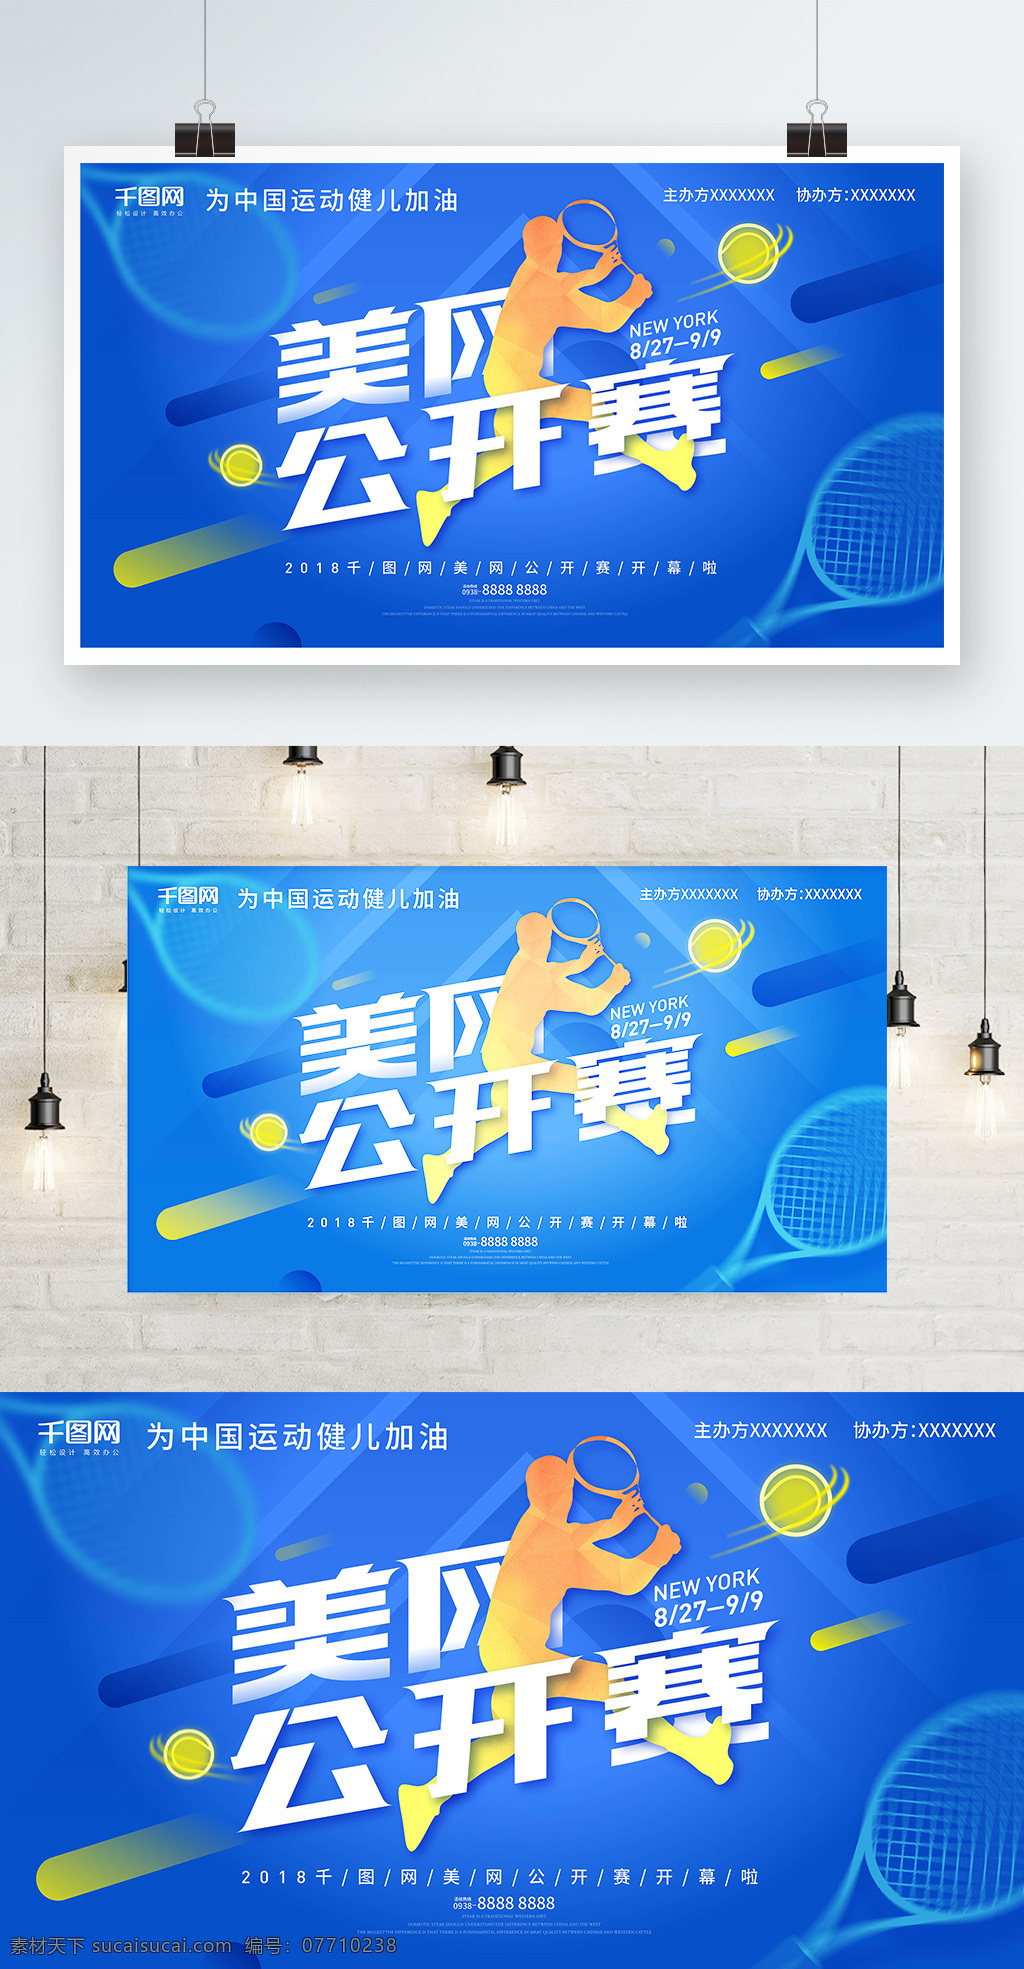 蓝色 流体 网球 公开赛 海报 体育 比赛 运动 开幕式 网球海报 竞技 活力蓝色 美网